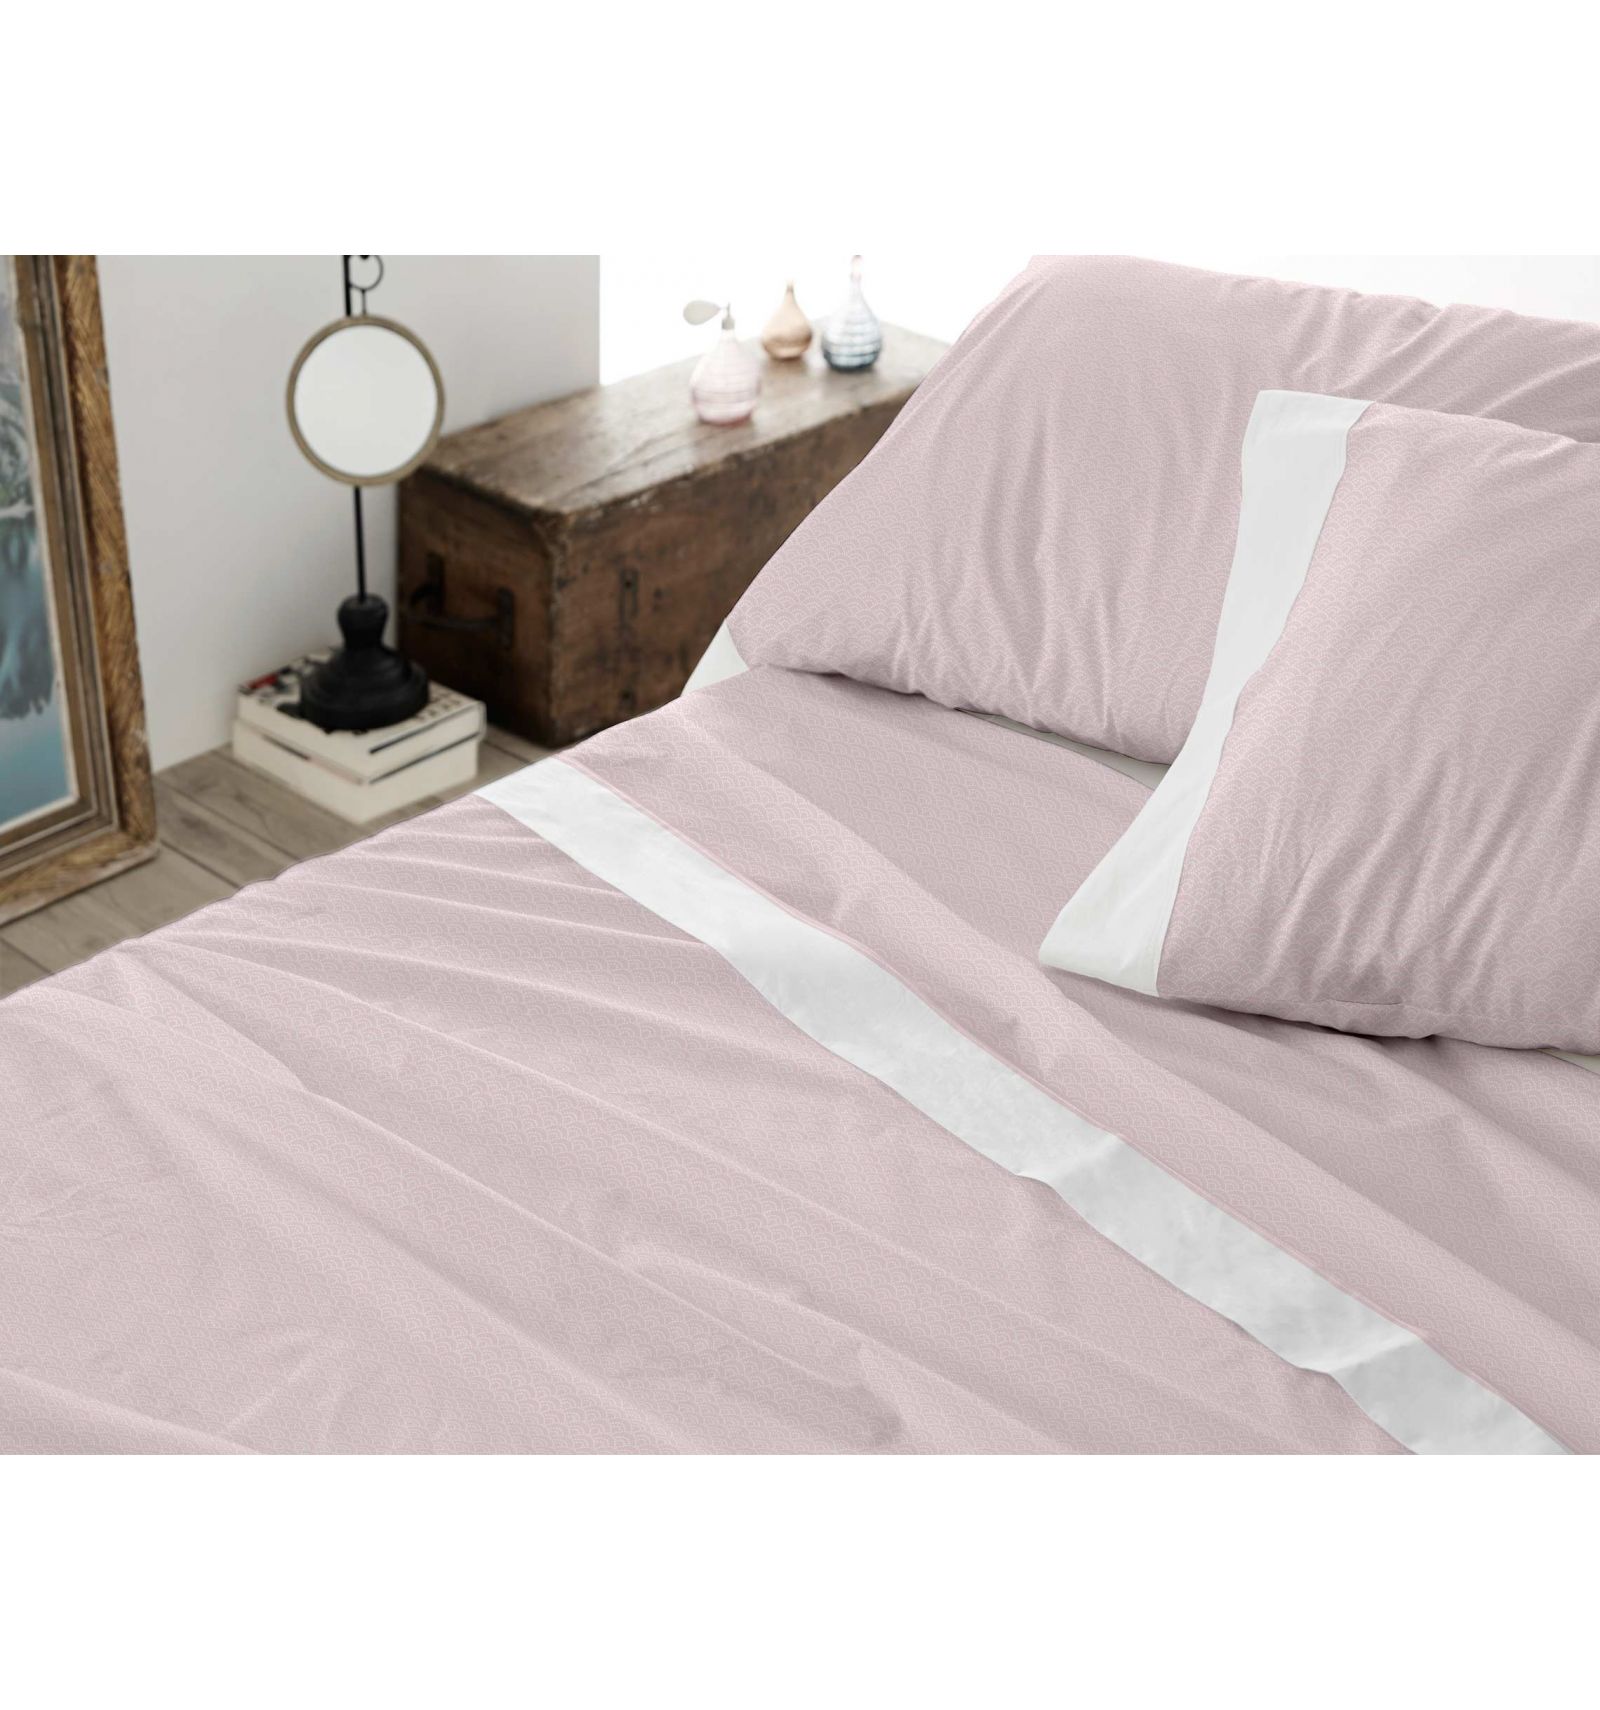 Juego de sábanas 100% algodón sostenible blanco 4 piezas cama 150